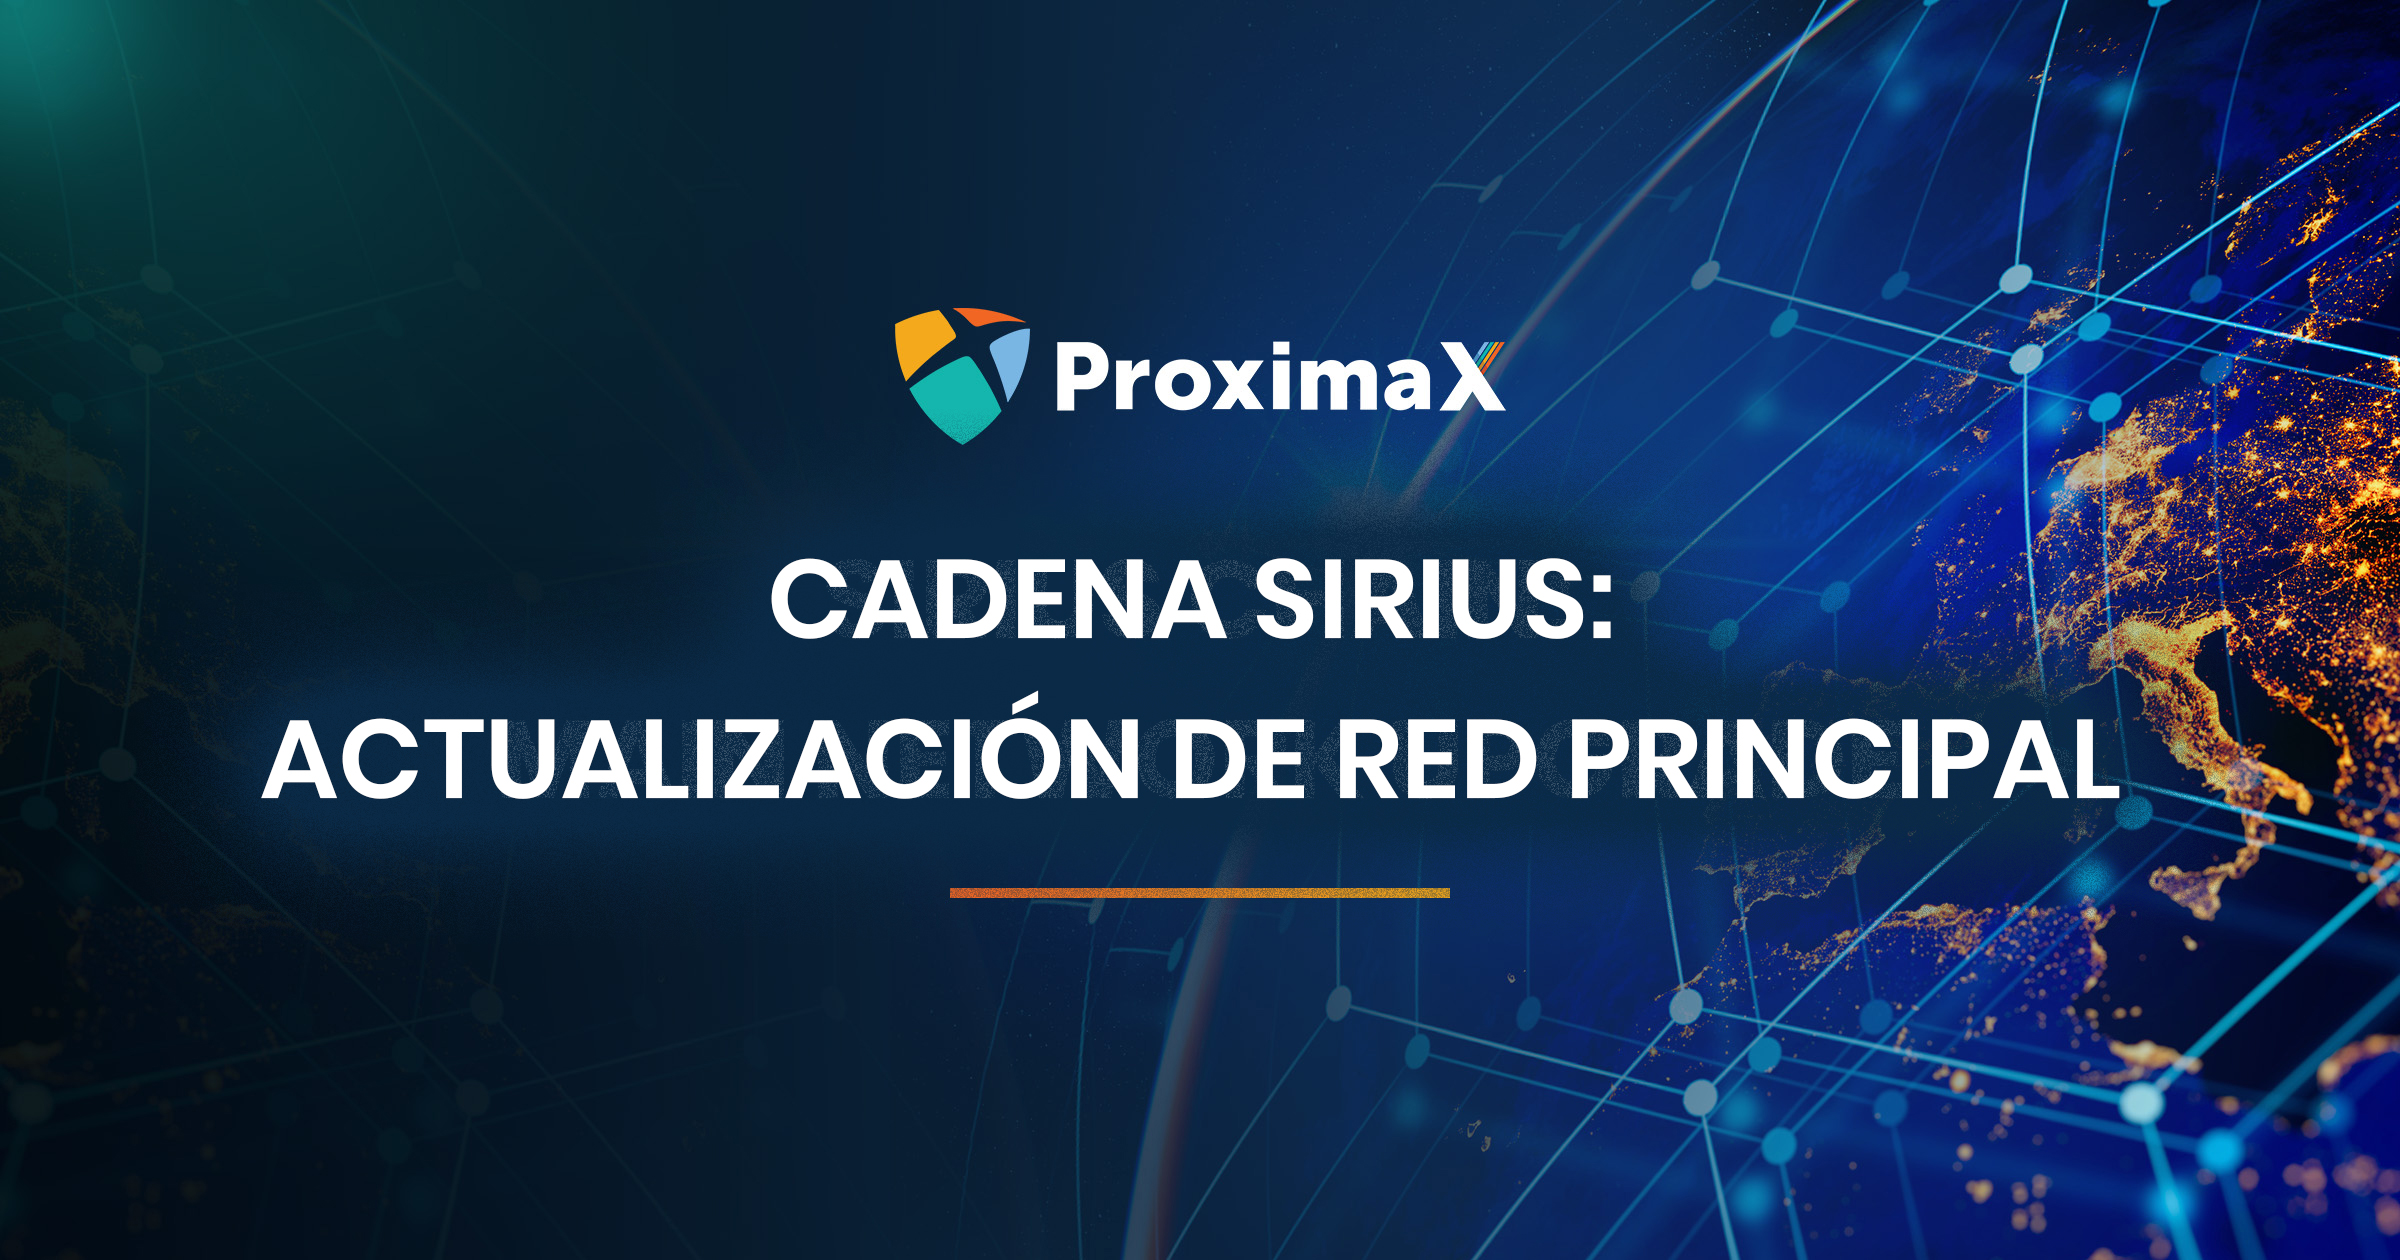 Actualización de versión y software de la cadena ProximaX Sirius en red pública (MainNet)